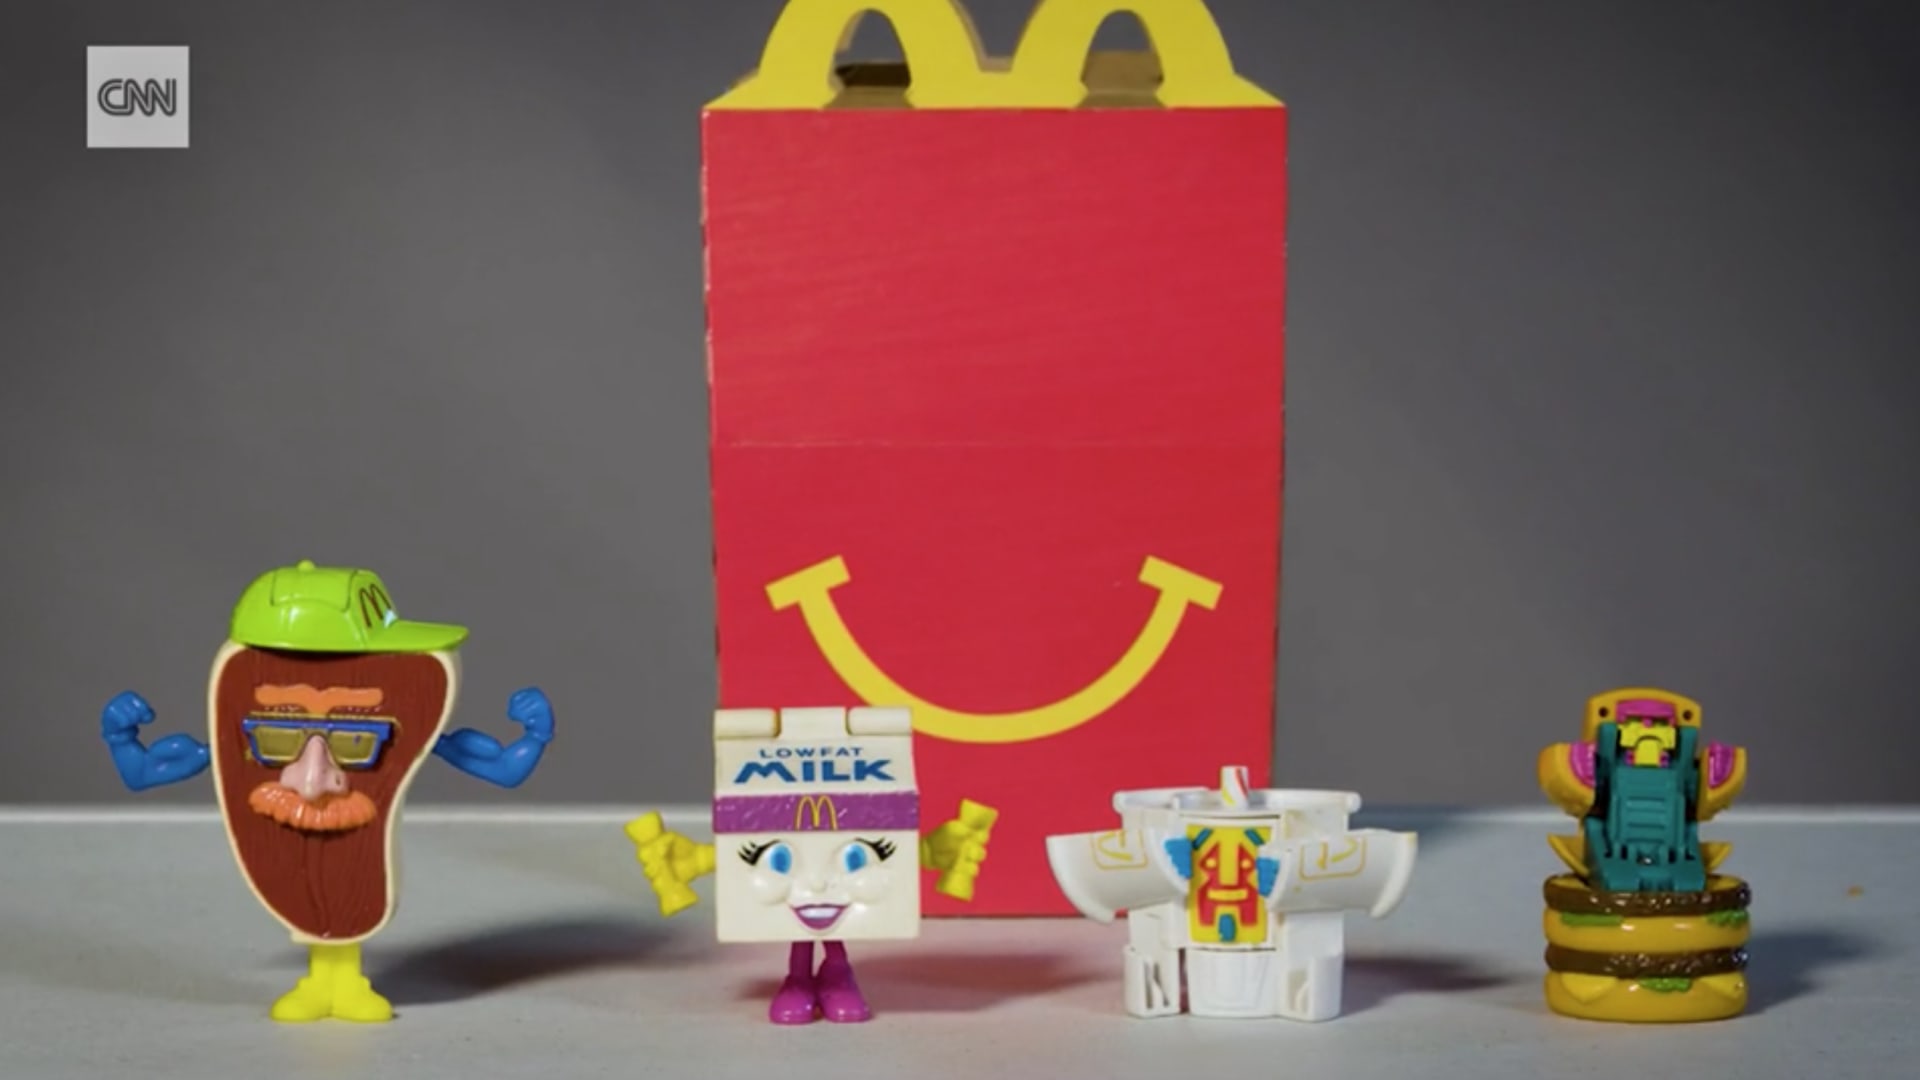 شاهد كيف تغيرت وجبة "هابي ميل" من ماكدونالدز عبر السنين